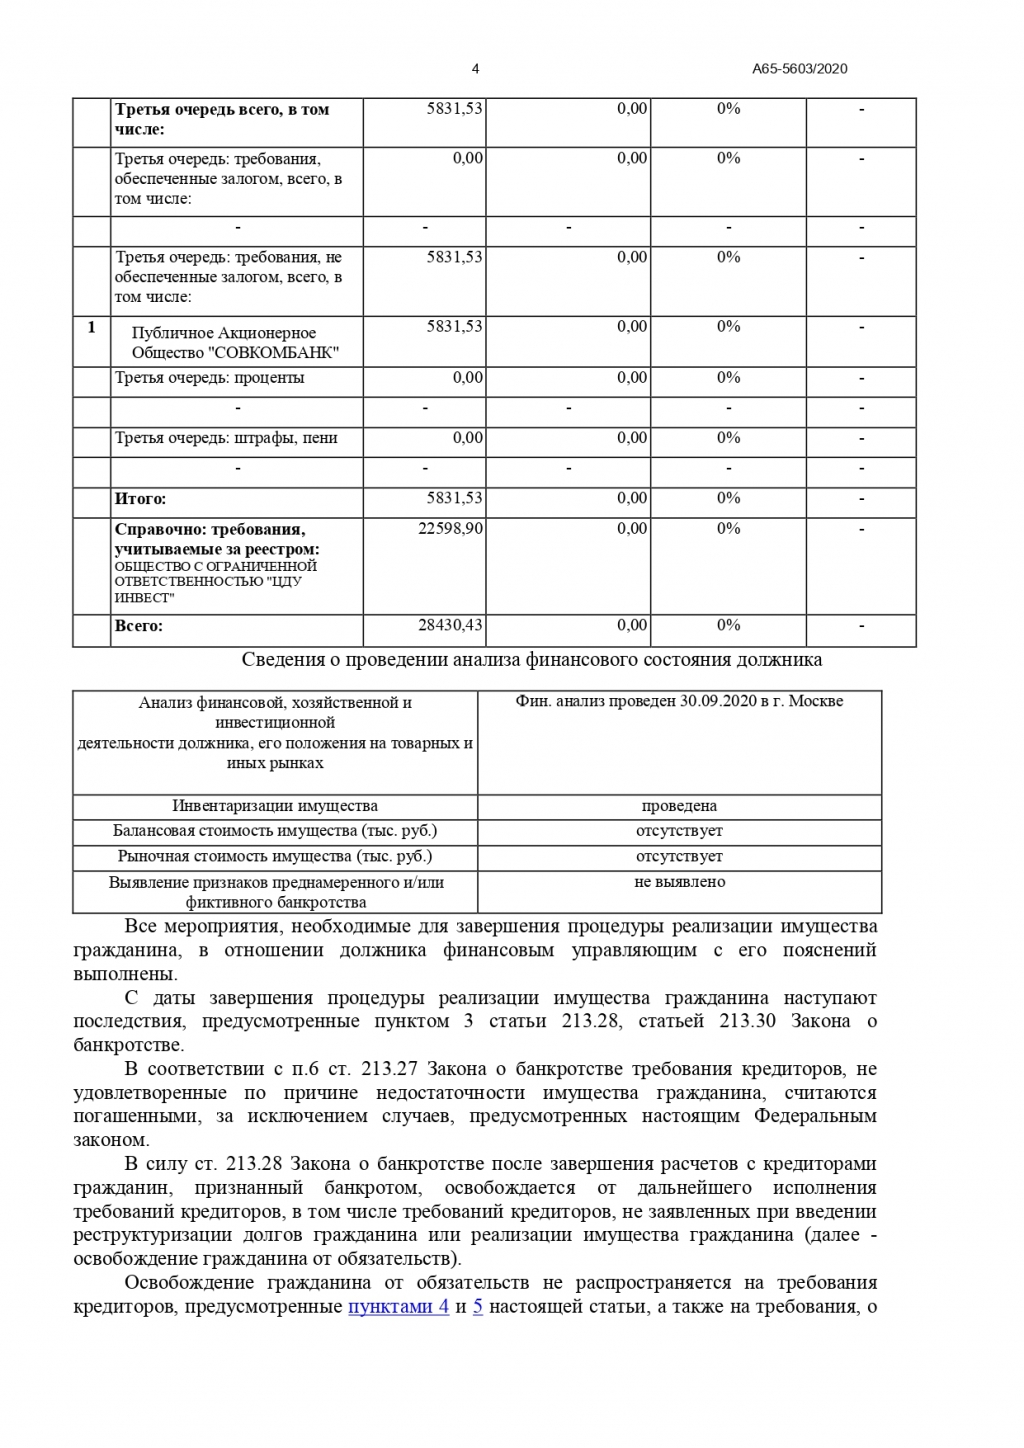 2ЛЕКС Банкротство ИП и физических лиц - дело № А65-5603/20 закрыли и задолженность списали